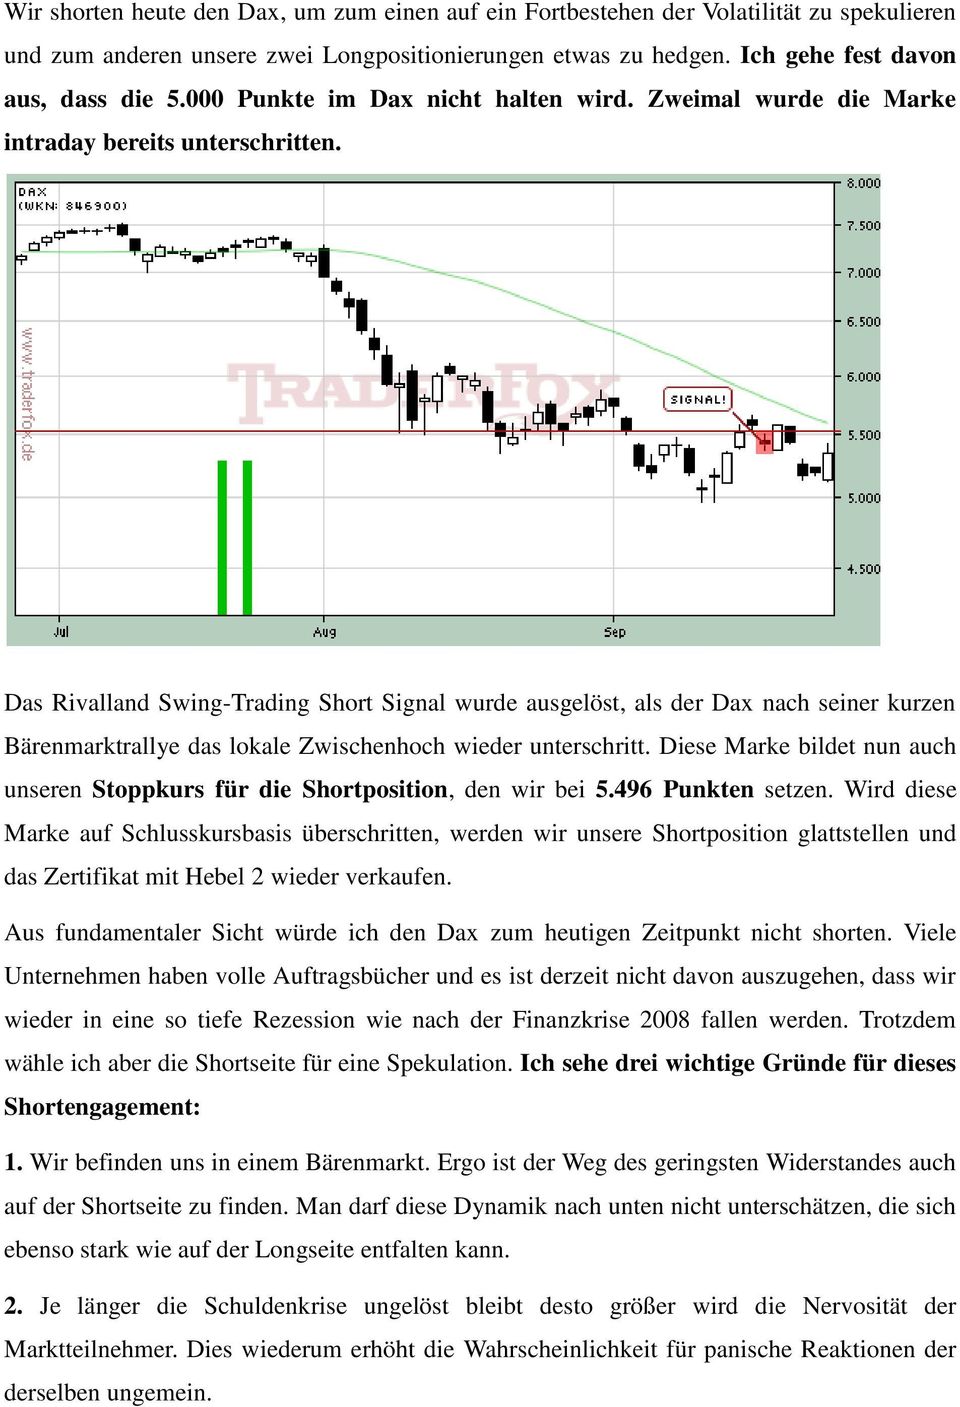 Das Rivalland Swing-Trading Short Signal wurde ausgelöst, als der Dax nach seiner kurzen Bärenmarktrallye das lokale Zwischenhoch wieder unterschritt.